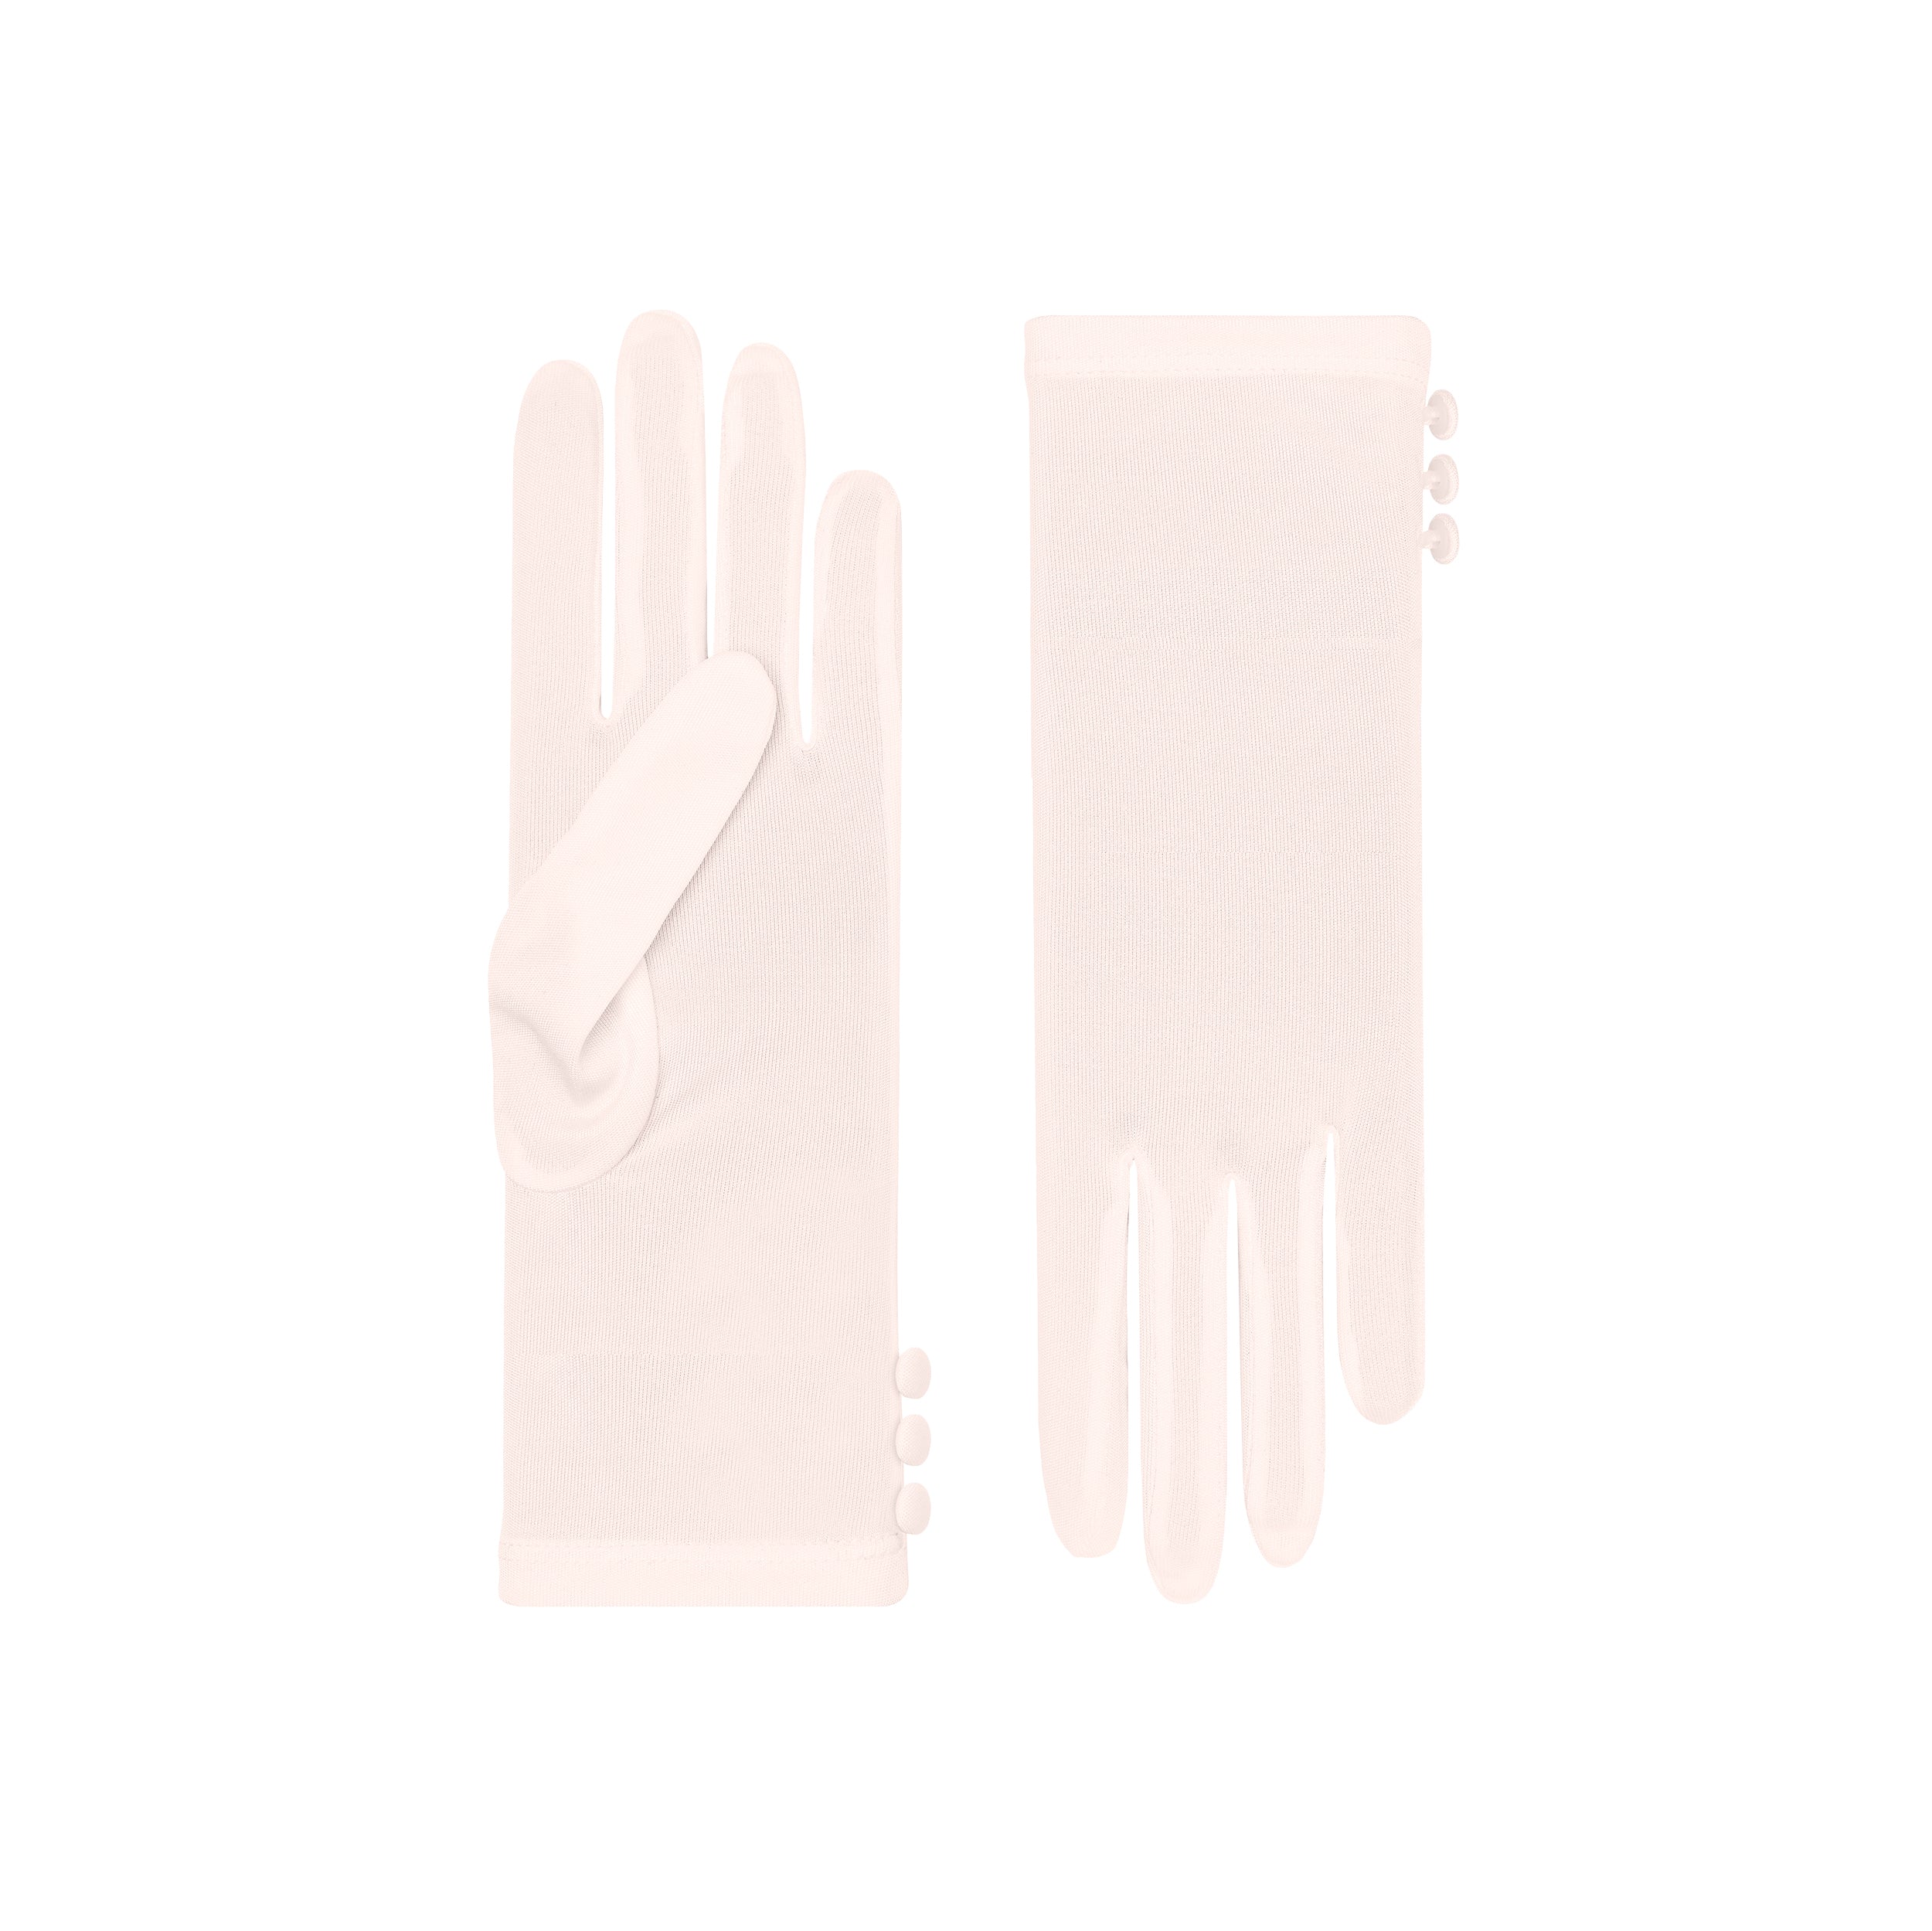 Cornelia James - Pink Short Silk Gloves - Clio - Size Large (8½) - Handmade Silk Gloves by Cornelia James